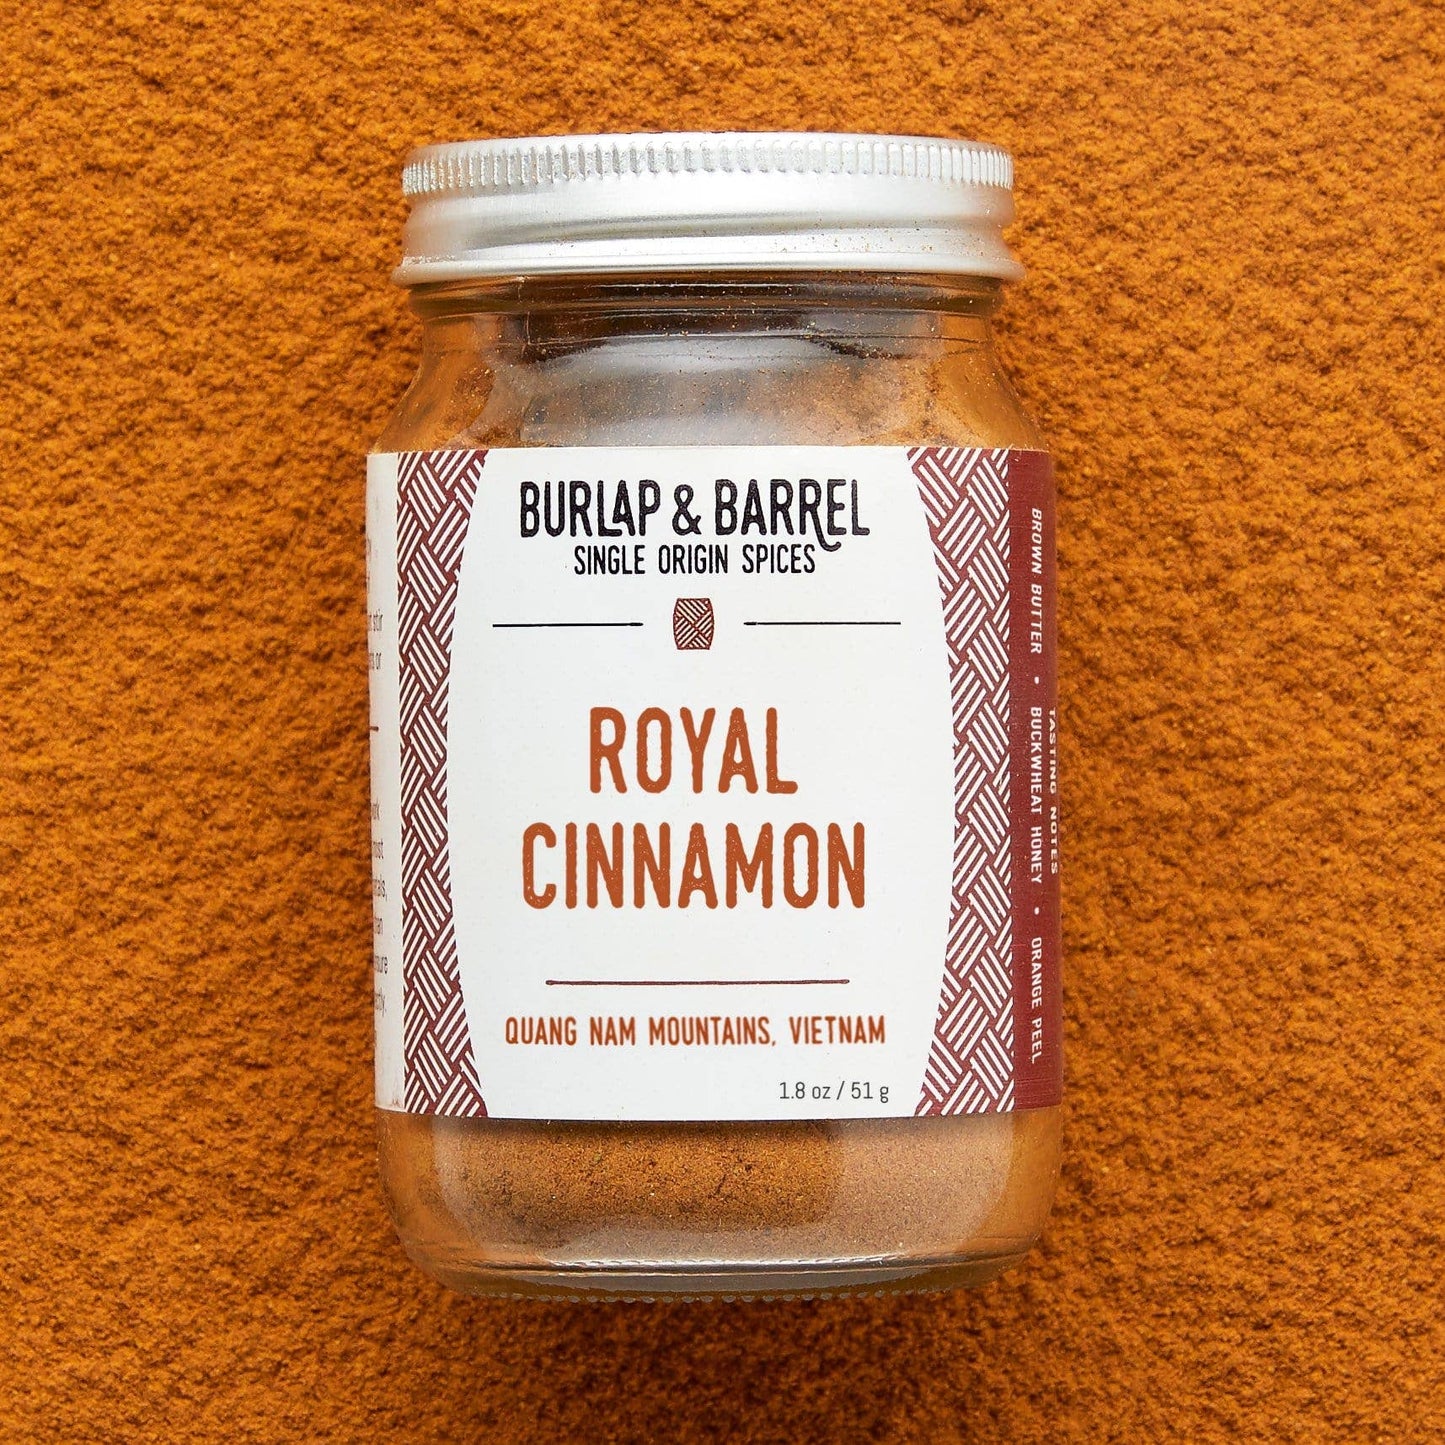 Royal Cinnamon (Saigon cinnamon, Vietnamese cinnamon)